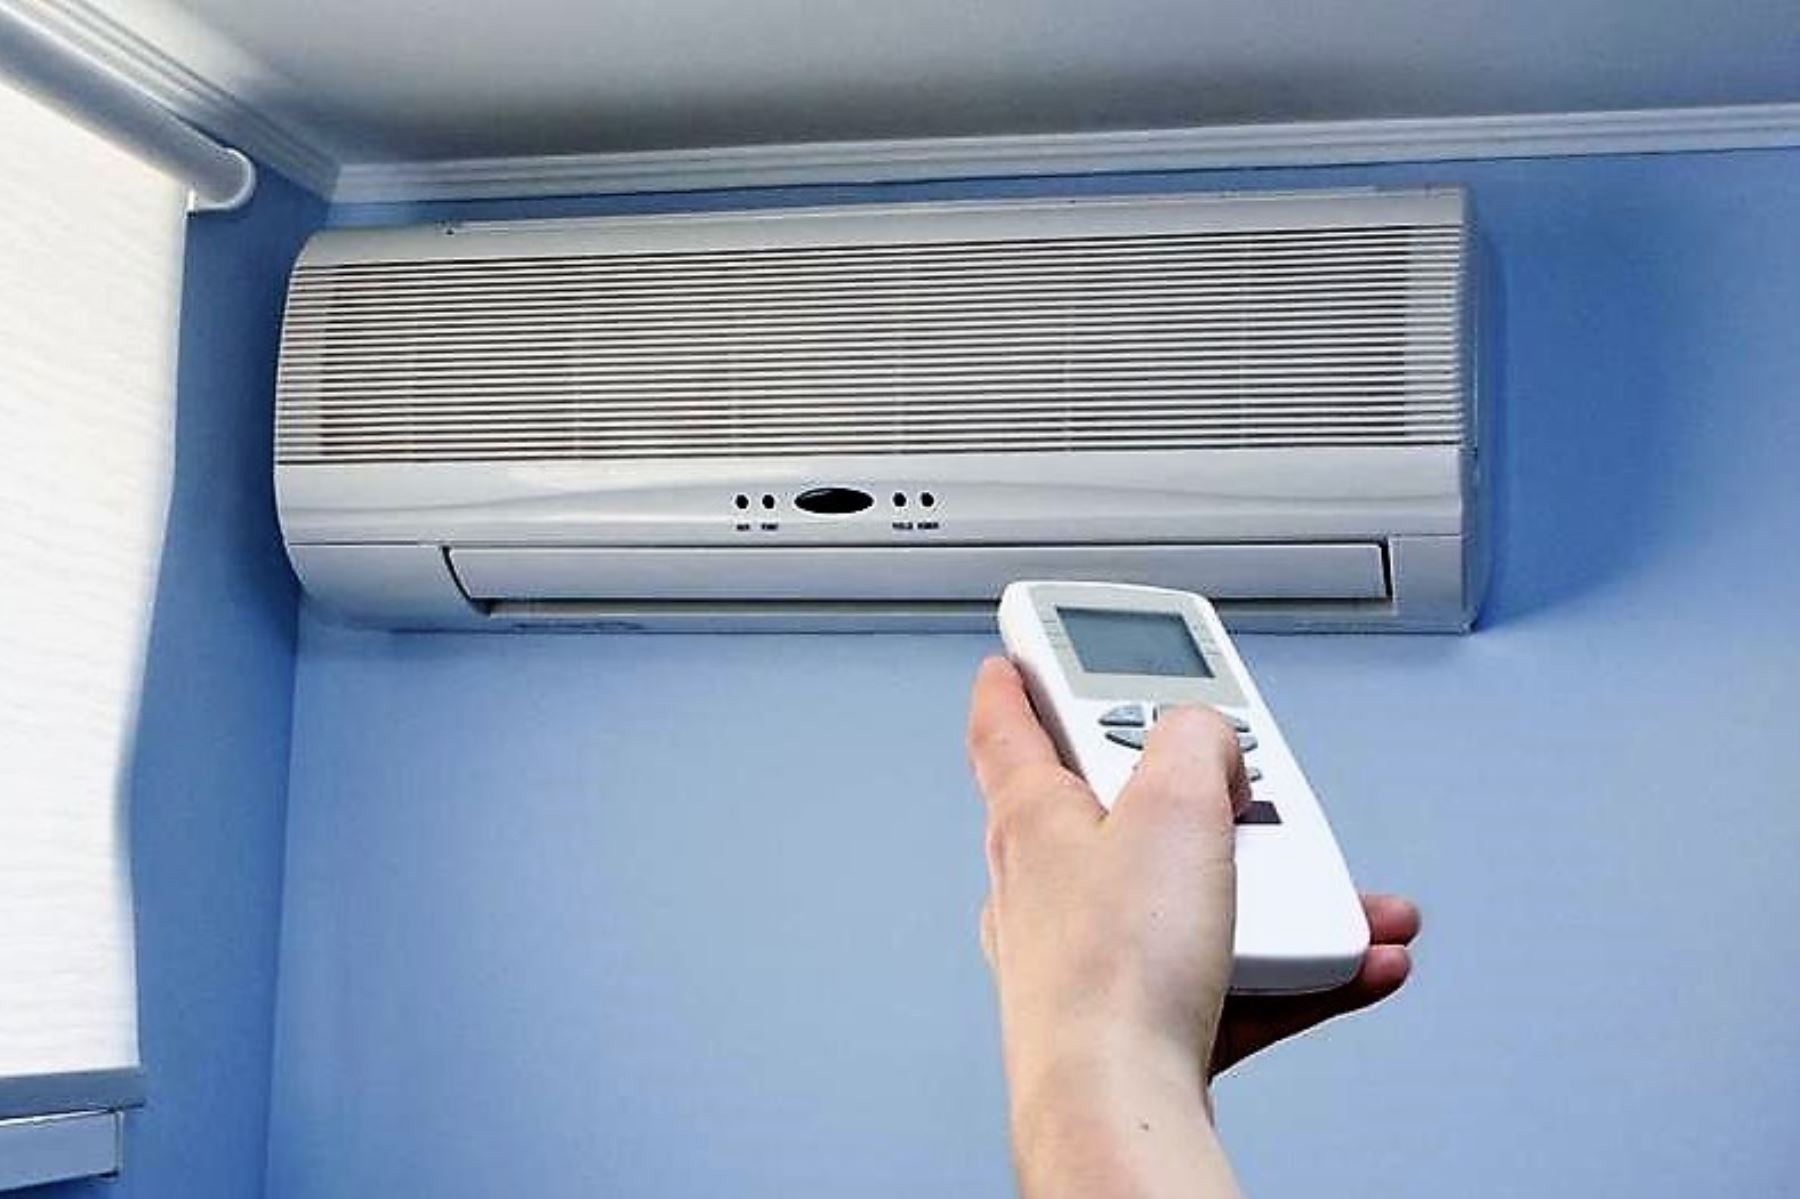 El equipo de aire acondicionado debe tener mantenimiento y limpieza frecuente para evitar la presencia de enfermedades respiratorias. ANDINA/Difusión